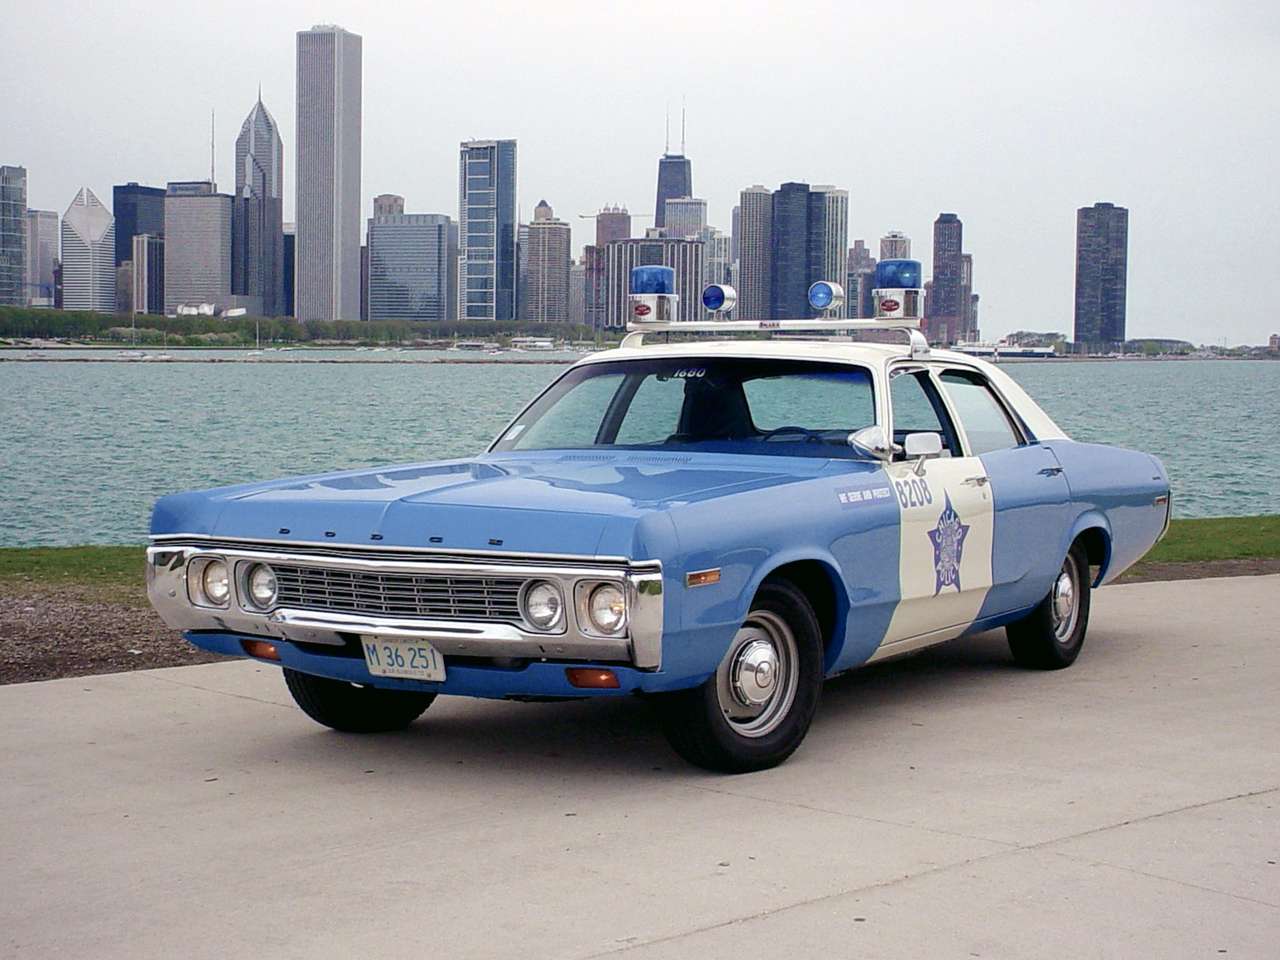 1972 Dodge Polara Полицейски пакет онлайн пъзел